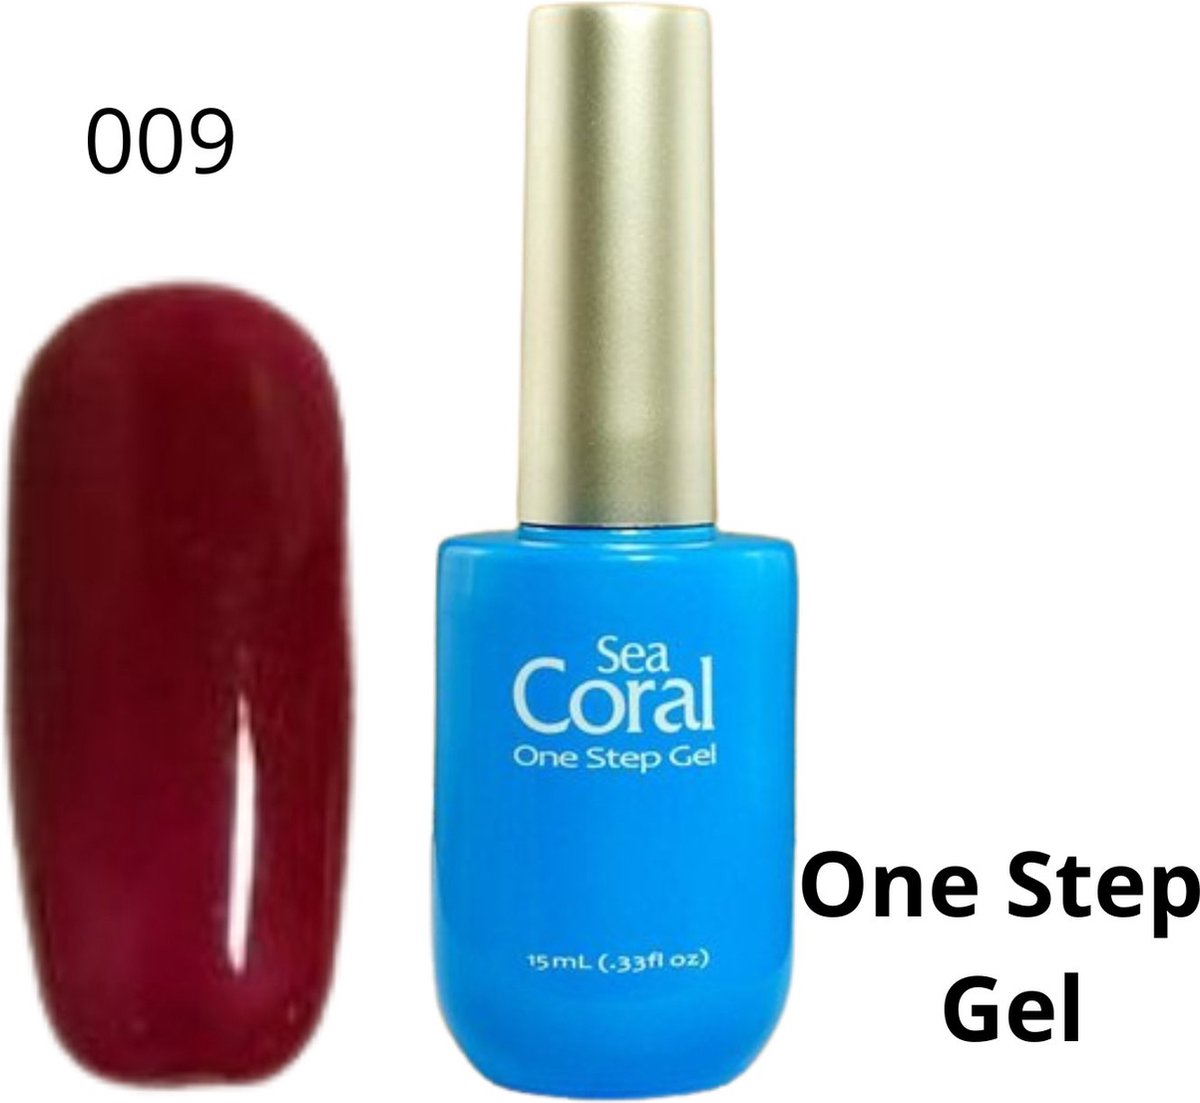 SeaCoral One Step No Wipe Gellak - Gel Nagellak - GelPolish – geen plaklaag - zónder kleeflaag, geschikt voor UV en LED – Rood 009